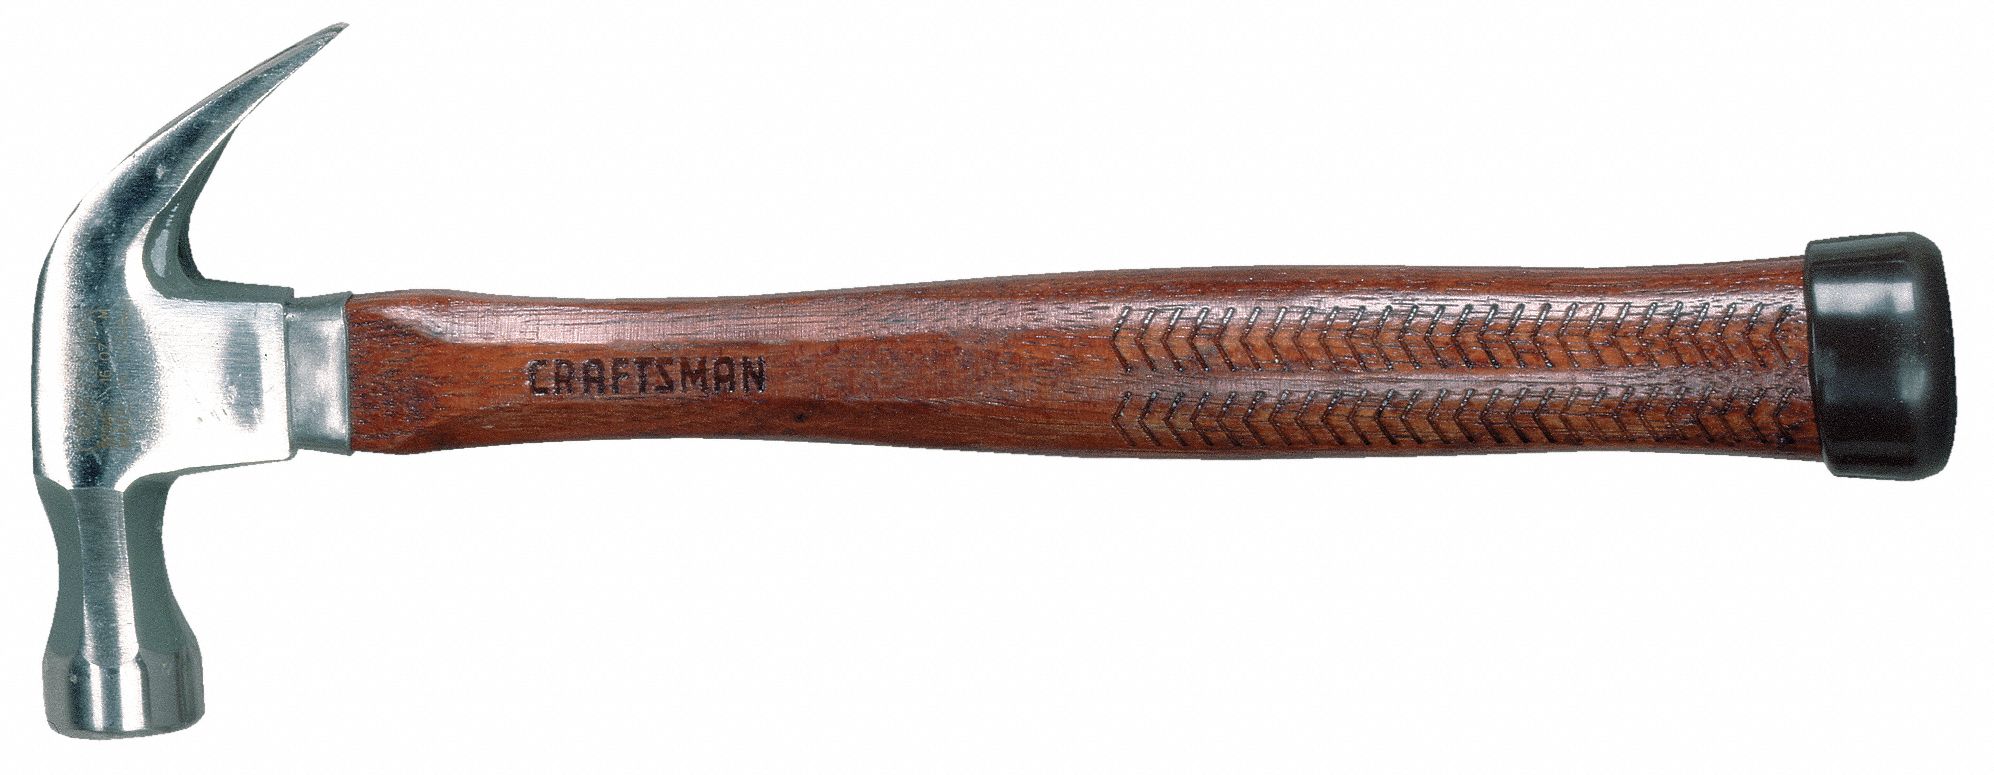 craftsman framing hammer